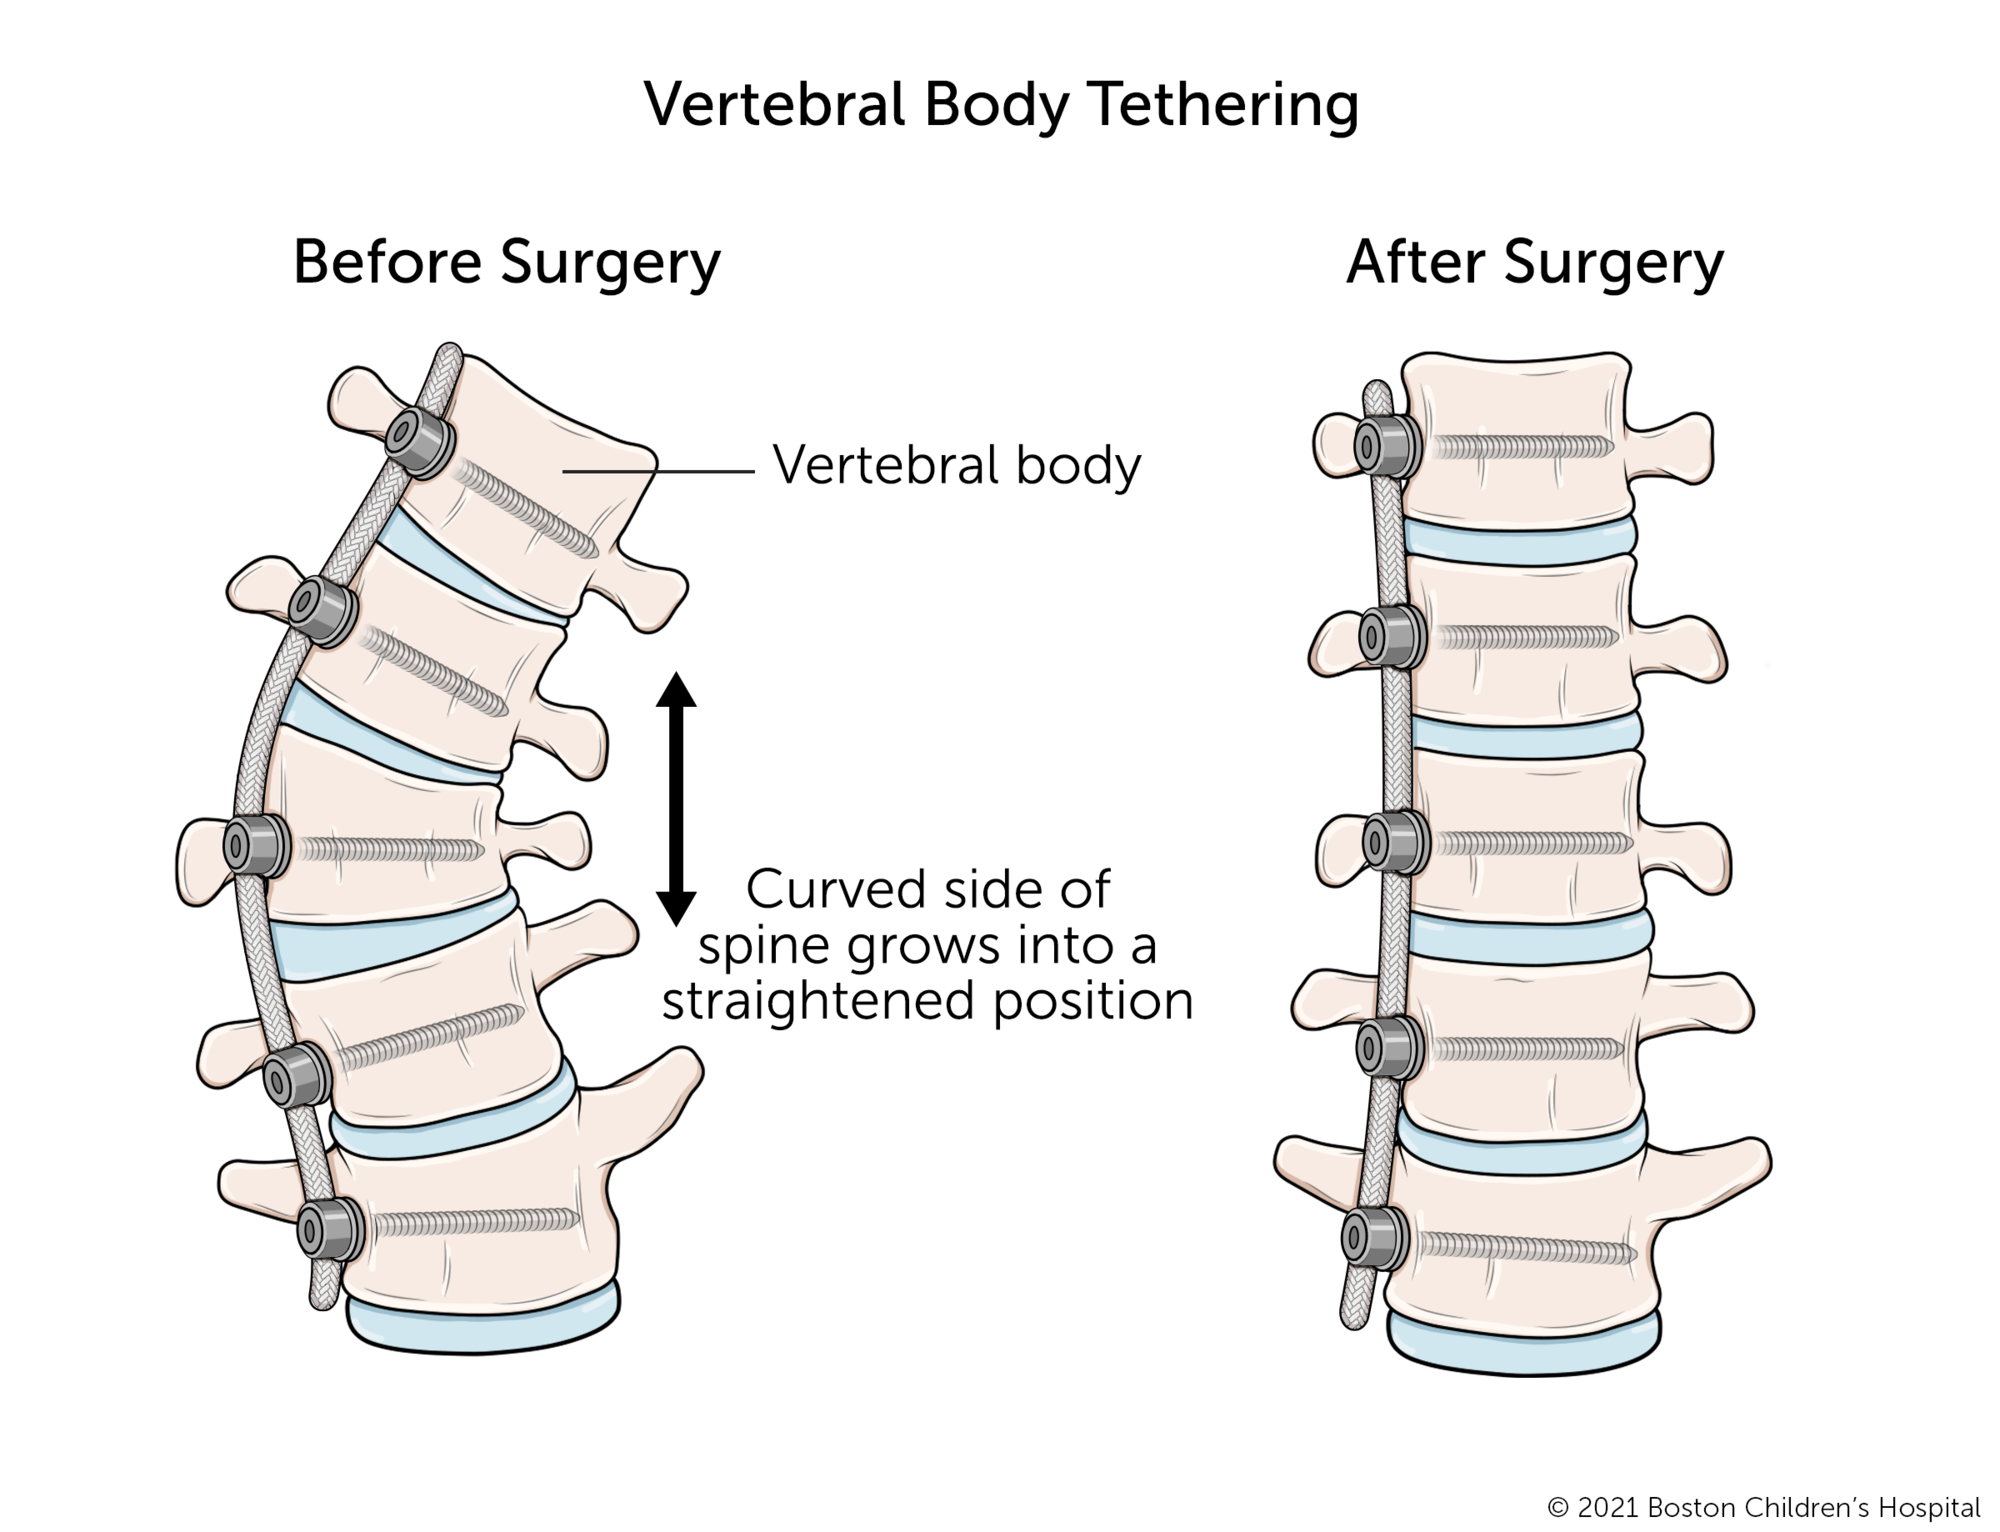 在椎体束缚的前后插图。在手术前，几个椎骨在一侧比另一方更短。在手术后将系绳连接到脊柱的弯曲侧，椎骨成长为均匀的形状，脊柱变得更直。